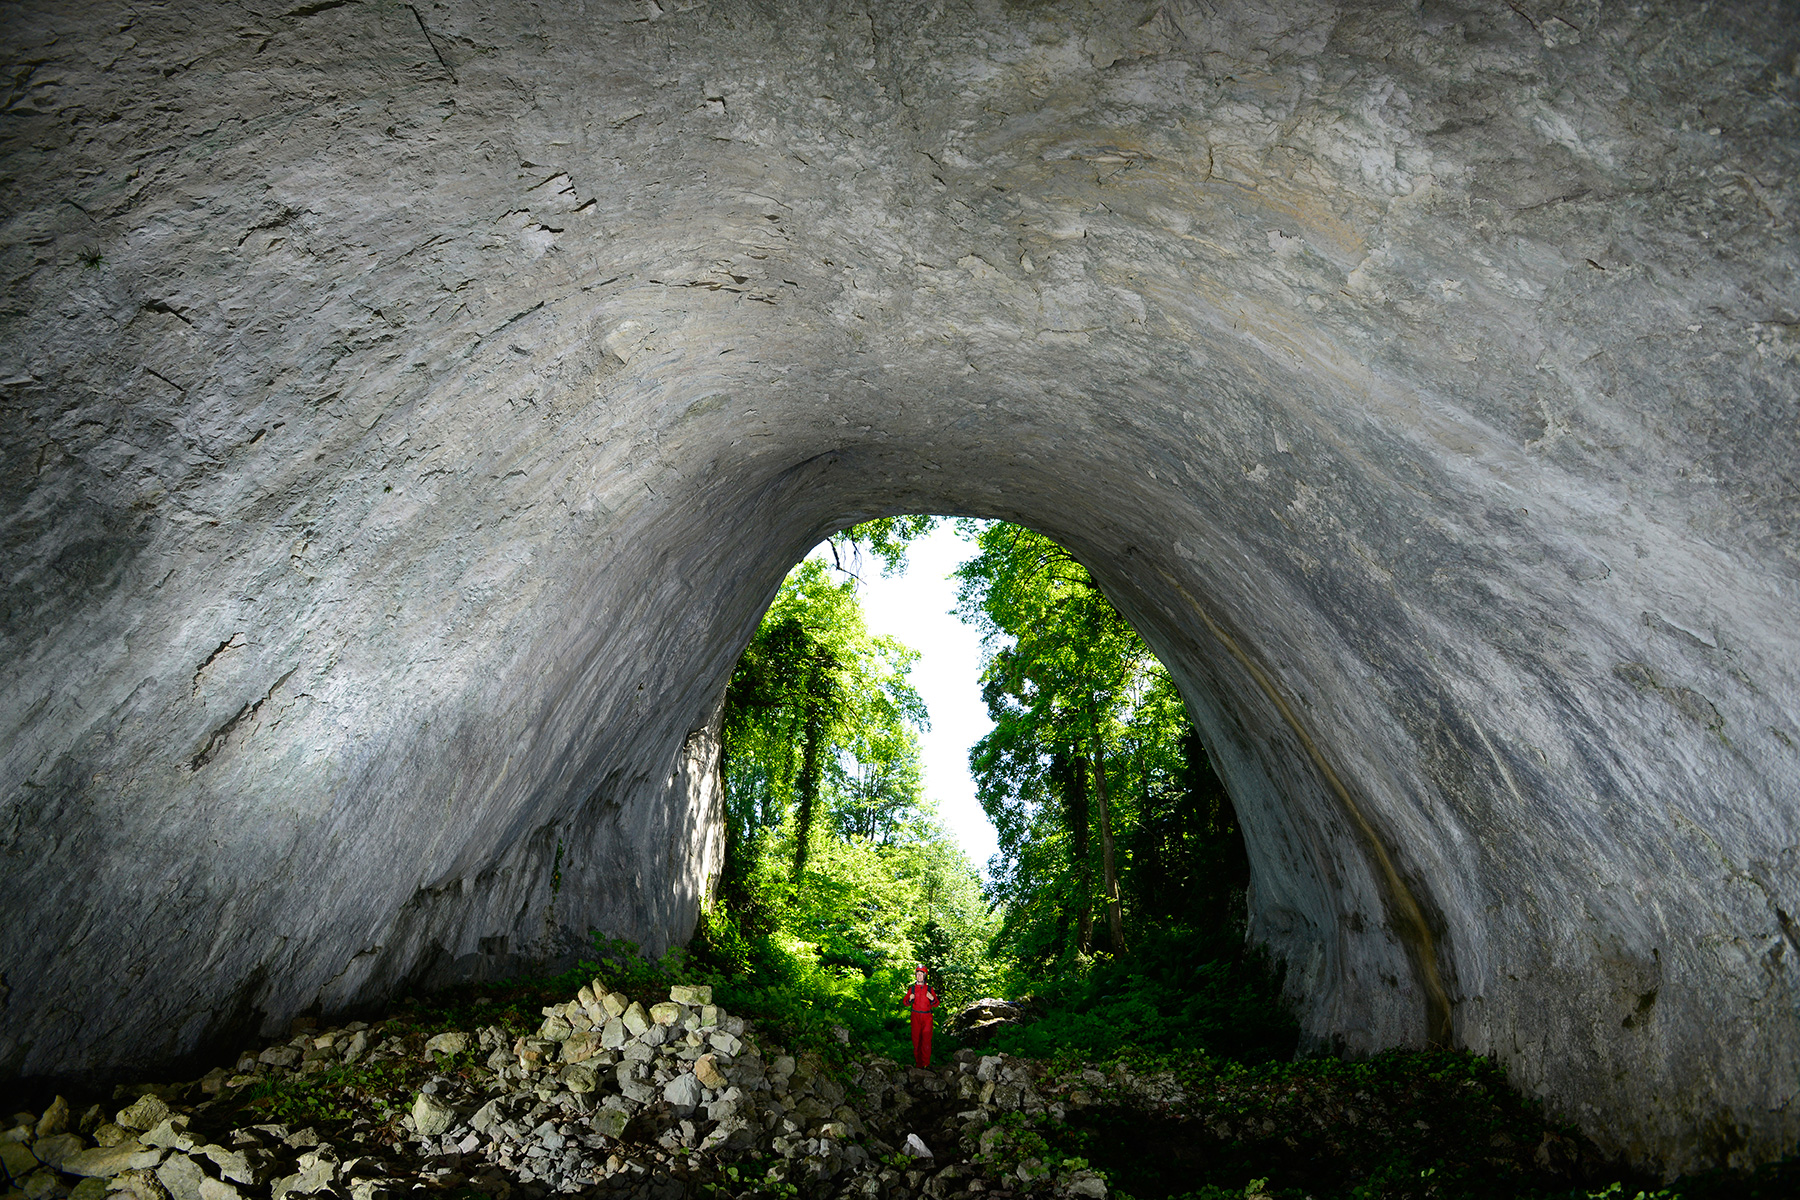 Ilgarini Cave (Kure Mountains National Park - Turquie) : porche d'entrée